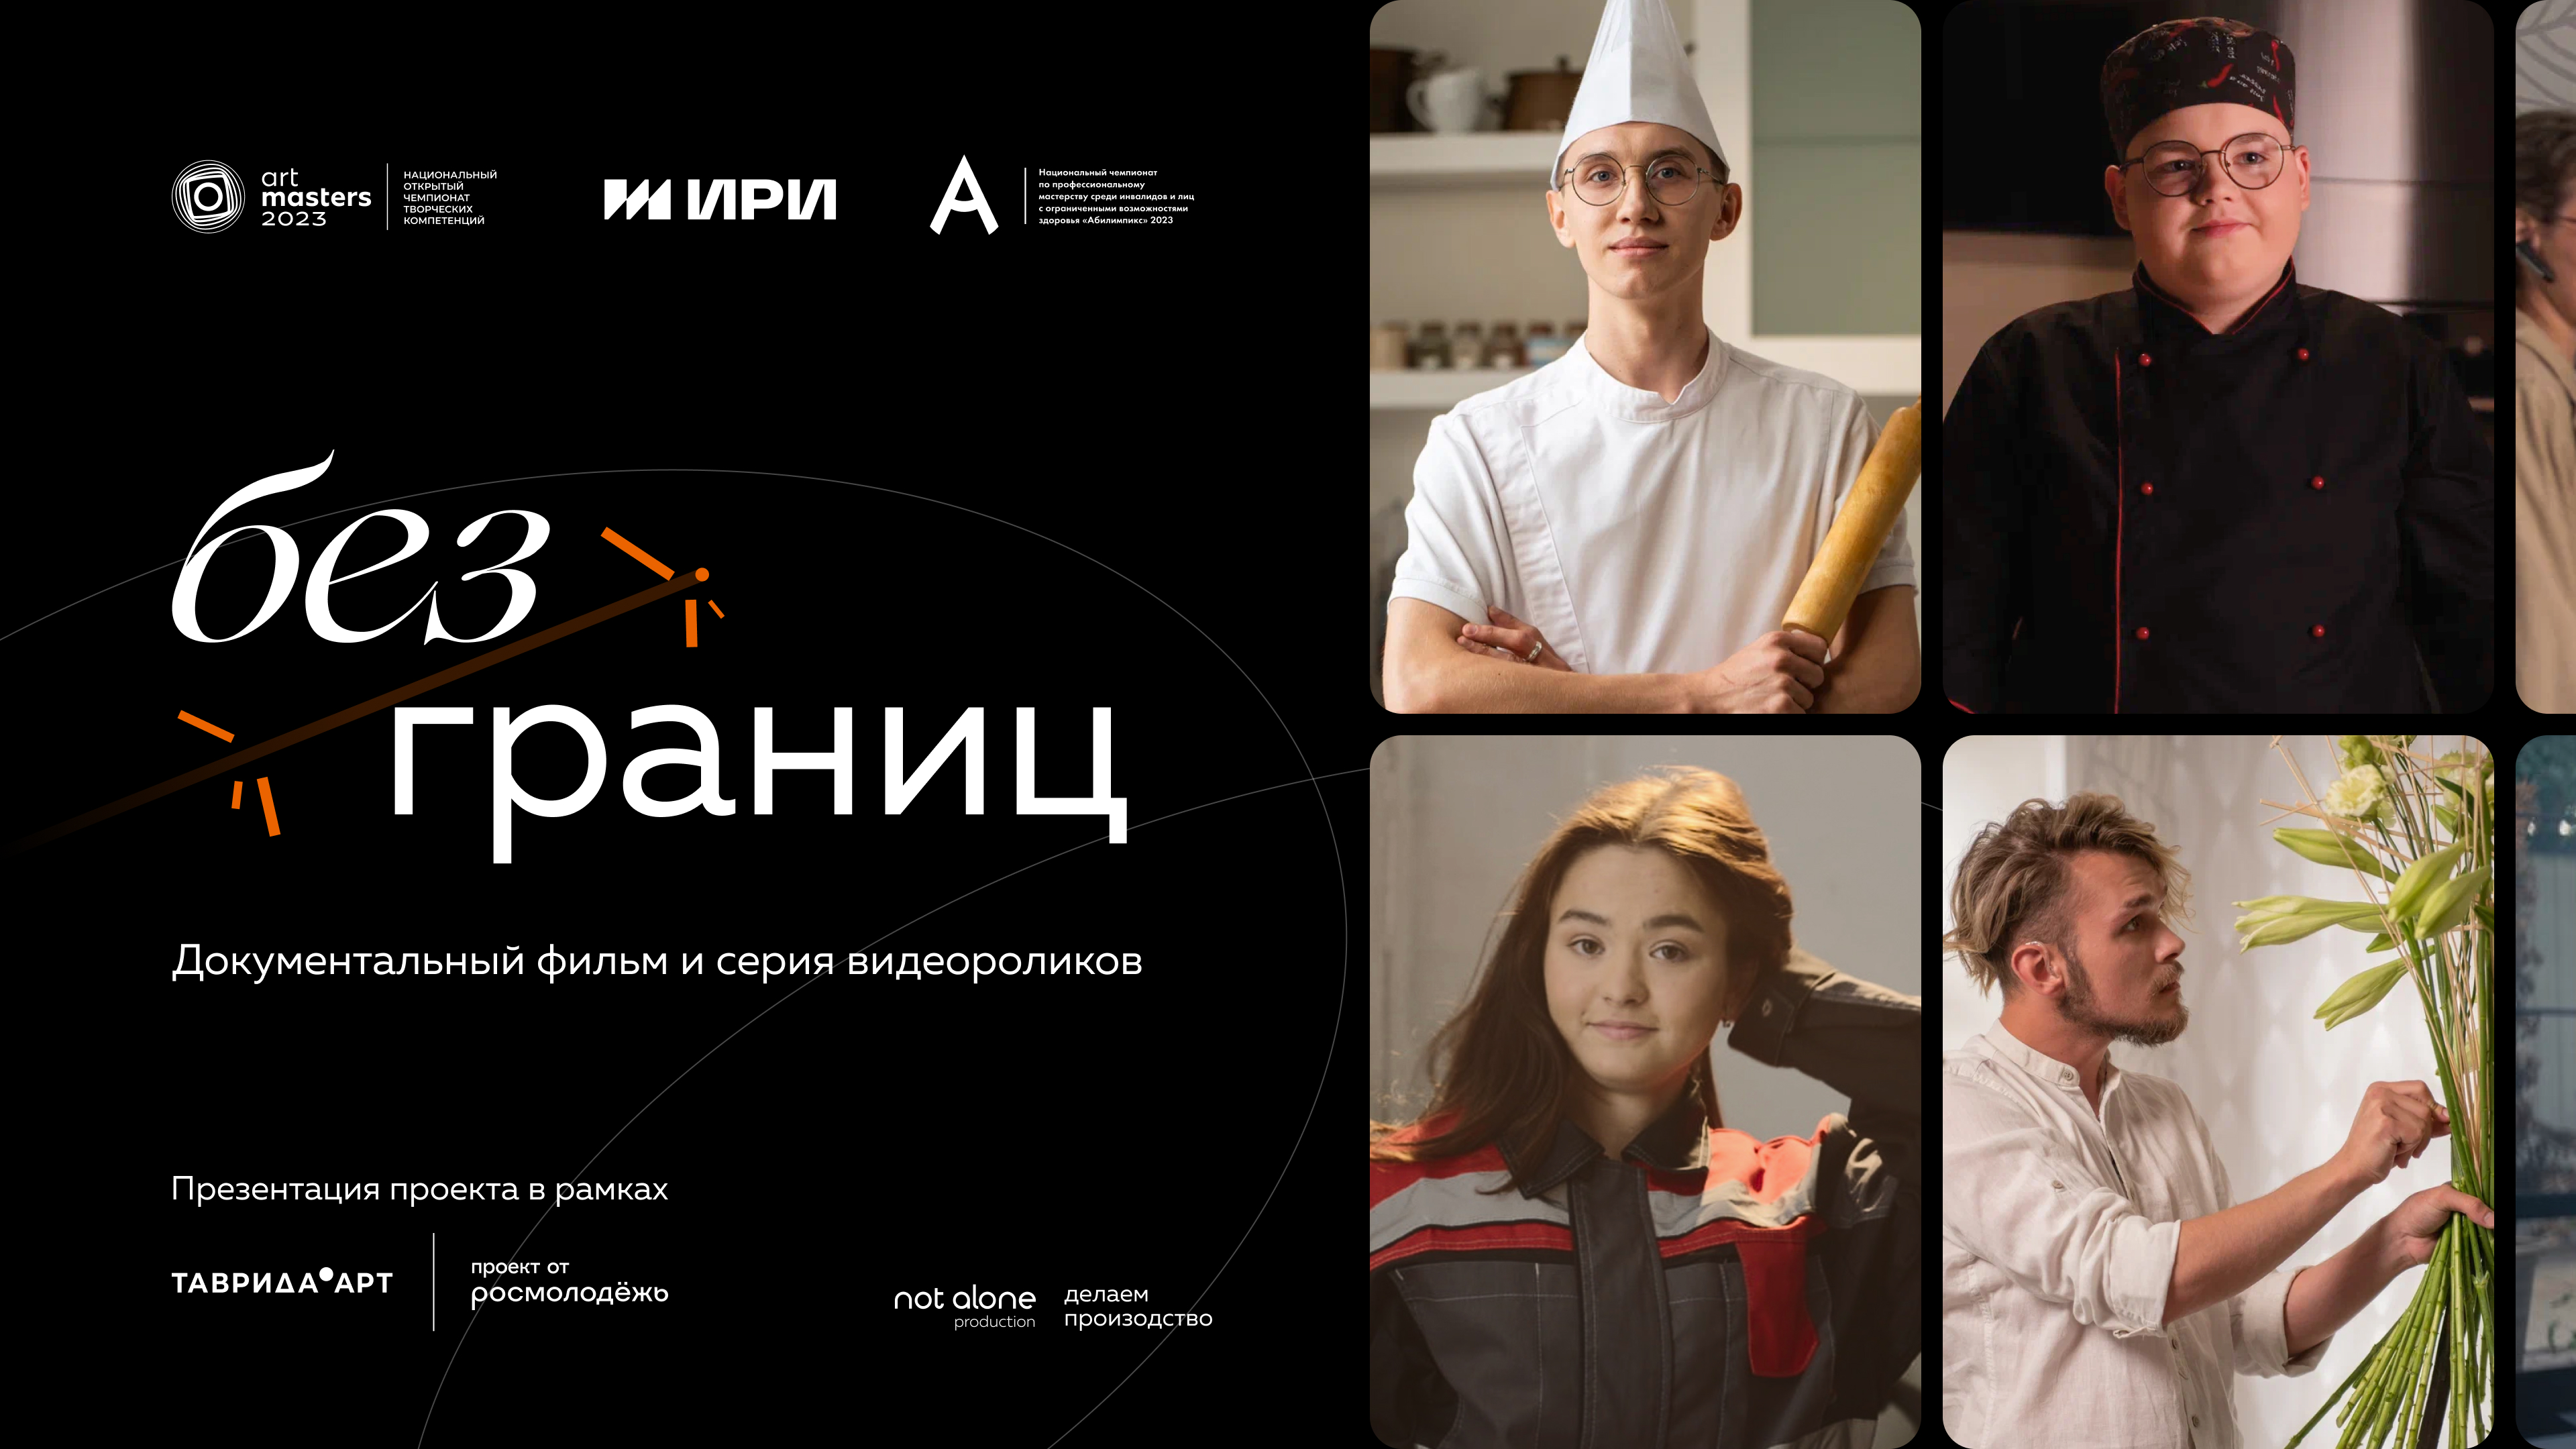 Предпремьерный показ документального фильма «Без границ» прошел на 5-ом юбилейном фестивале молодого искусства «Таврида.АРТ» в Крыму